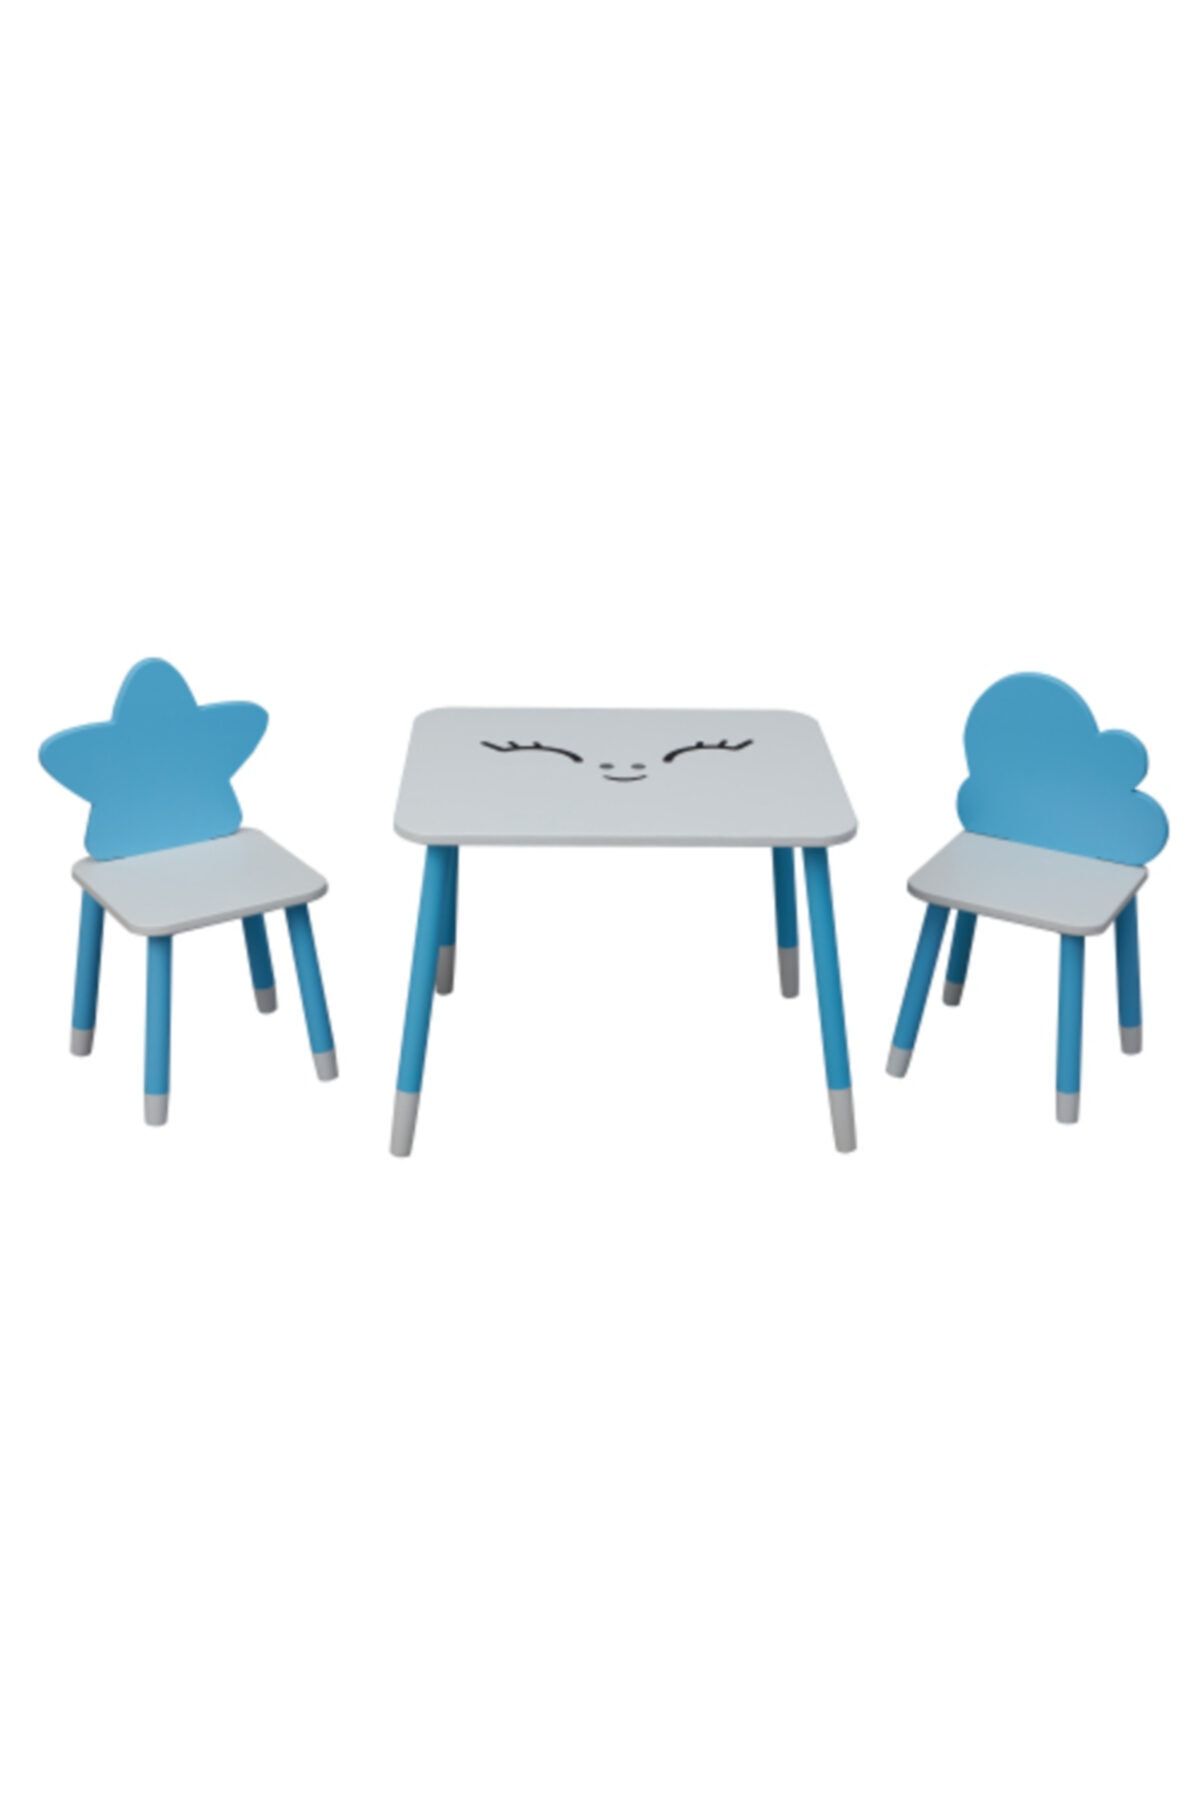 Picaline Mavi Dikdörtgen Masa 1 Yıldız Sandalye 1 Bulut Sandalye